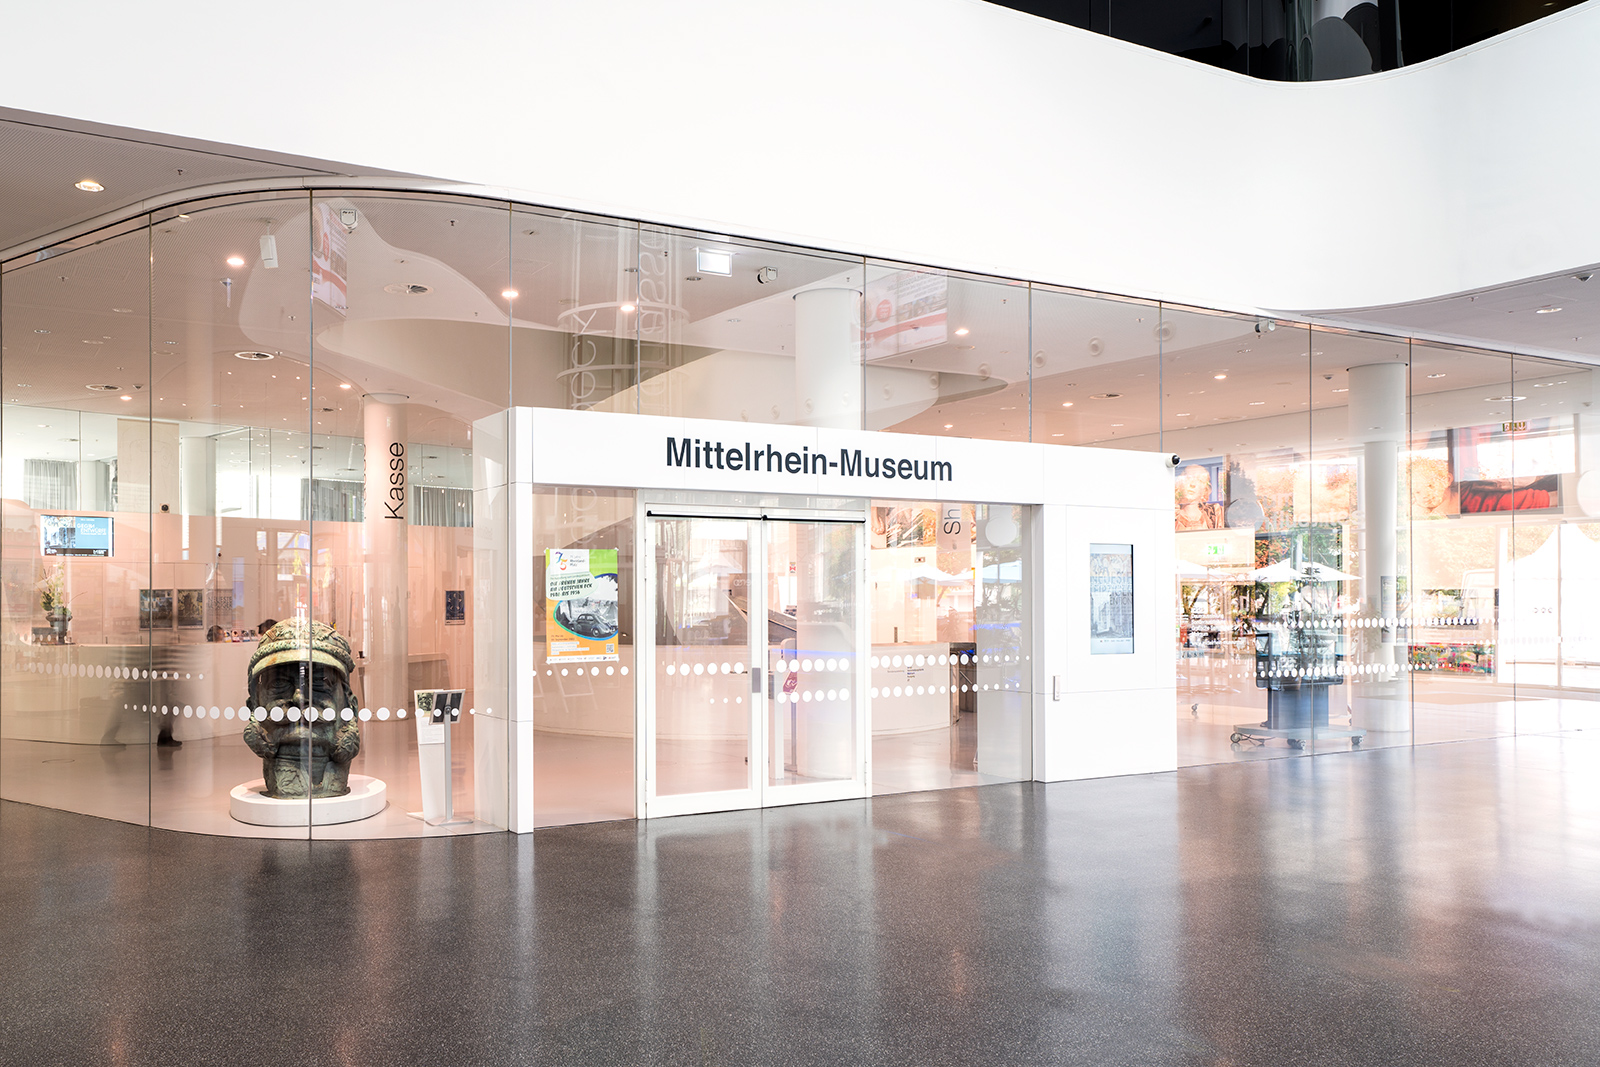 Mittelrhein Museum Koblenz